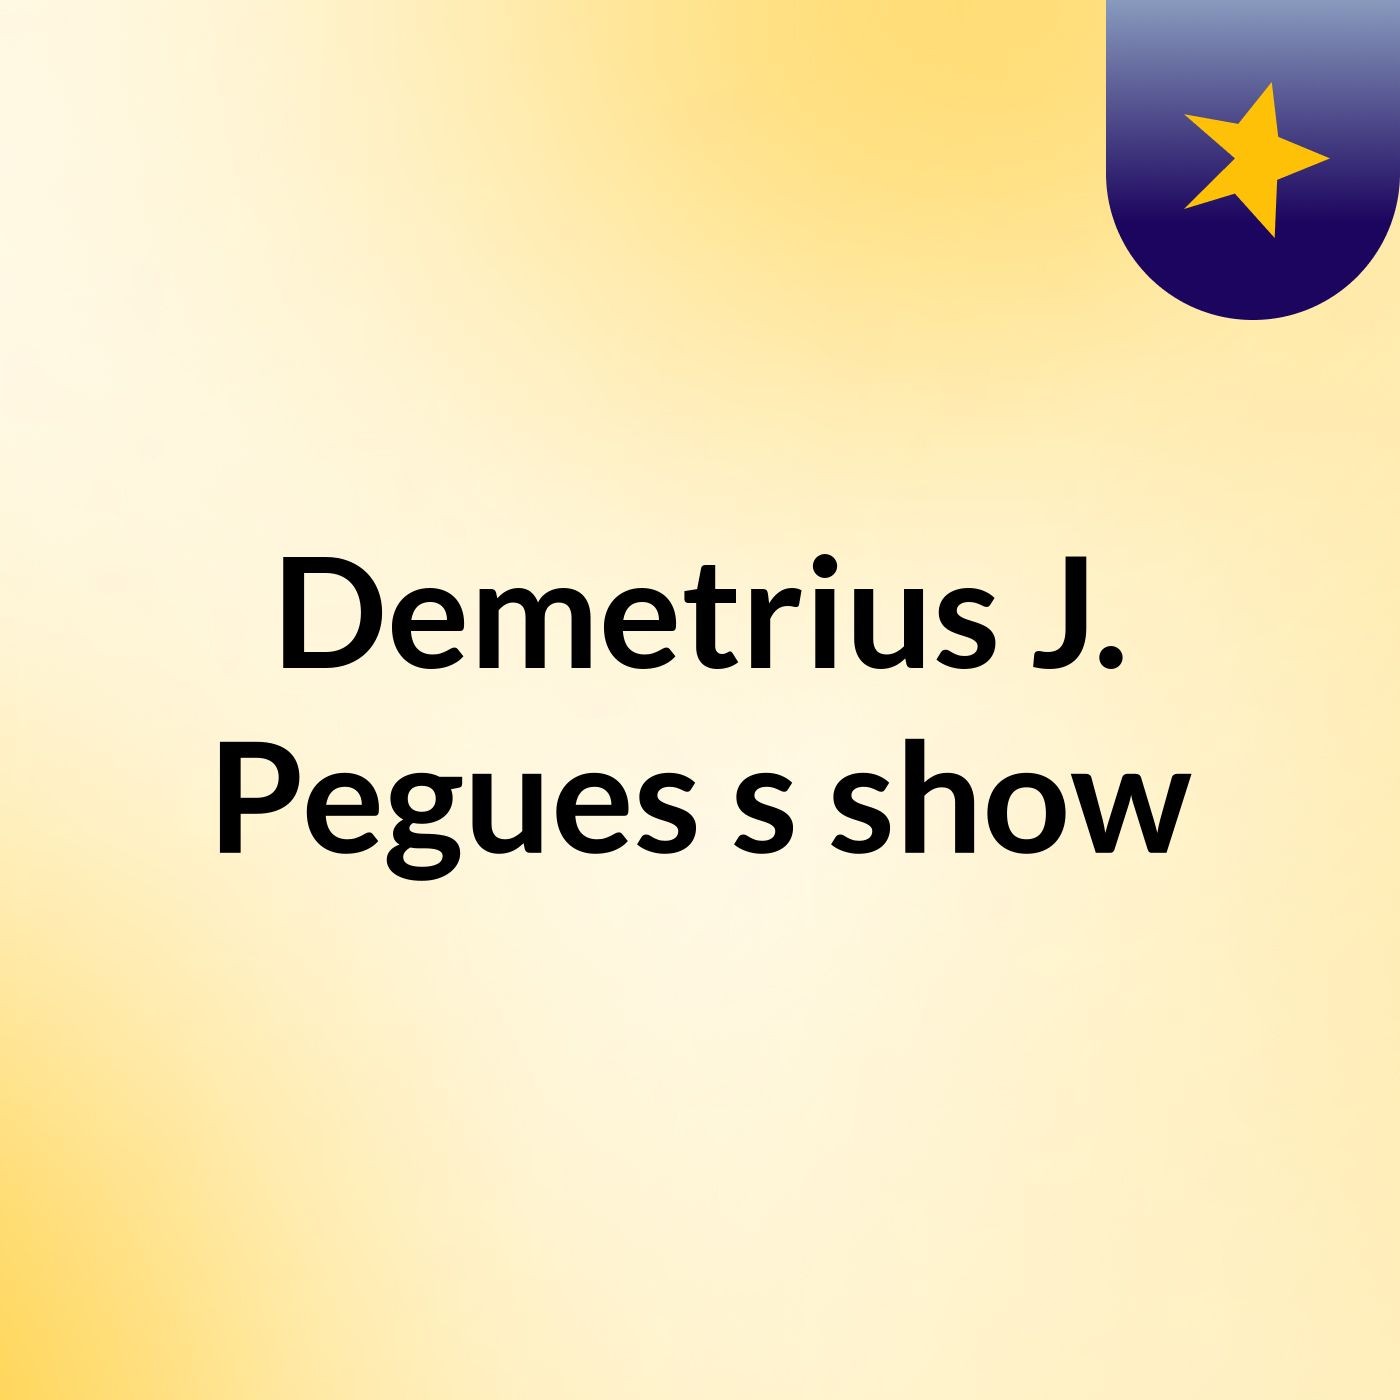 Demetrius J. Pegues's show